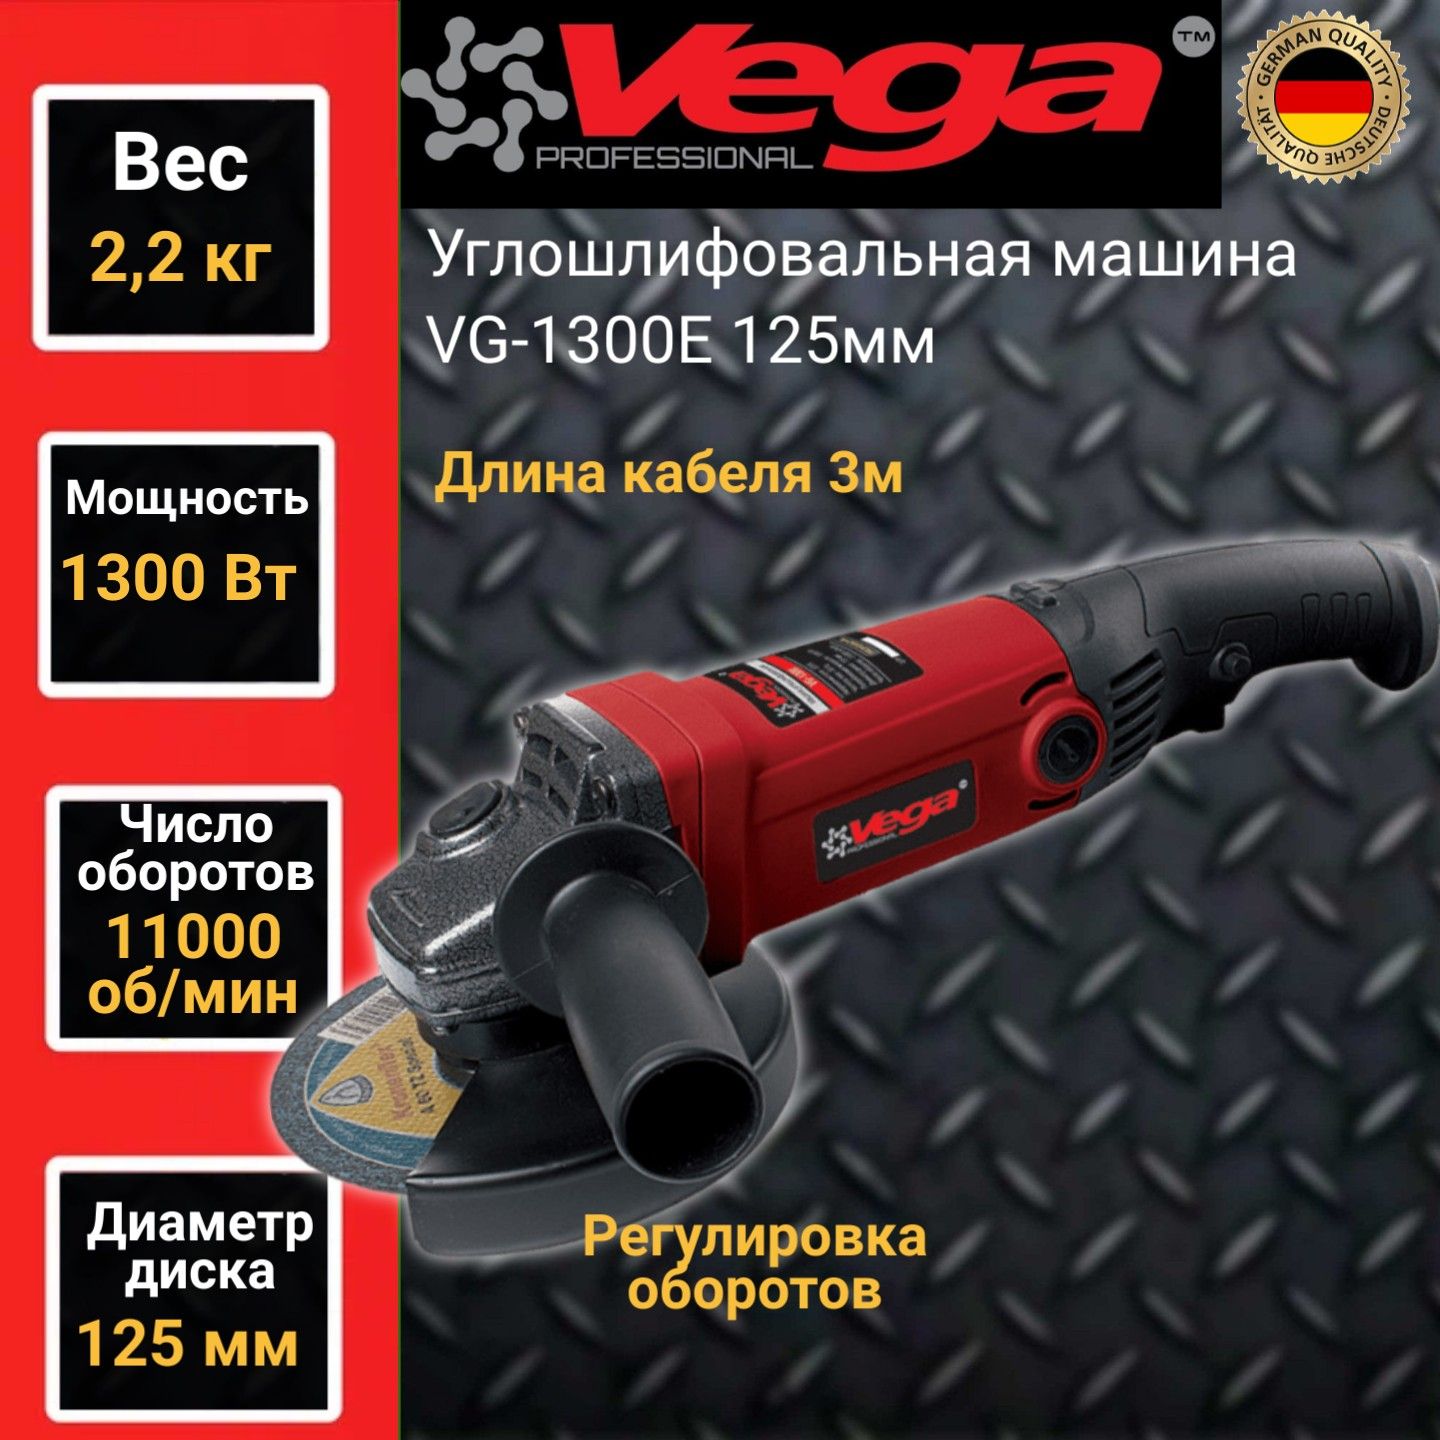 Углошлифовальная машина болгарка Vega Professional VG 1300Е, 125мм круг, 1300Вт,11000об/м углошлифовальная машина парма ушм 01 125 910 900вт 11000об мин рез шпин m14 d 125мм